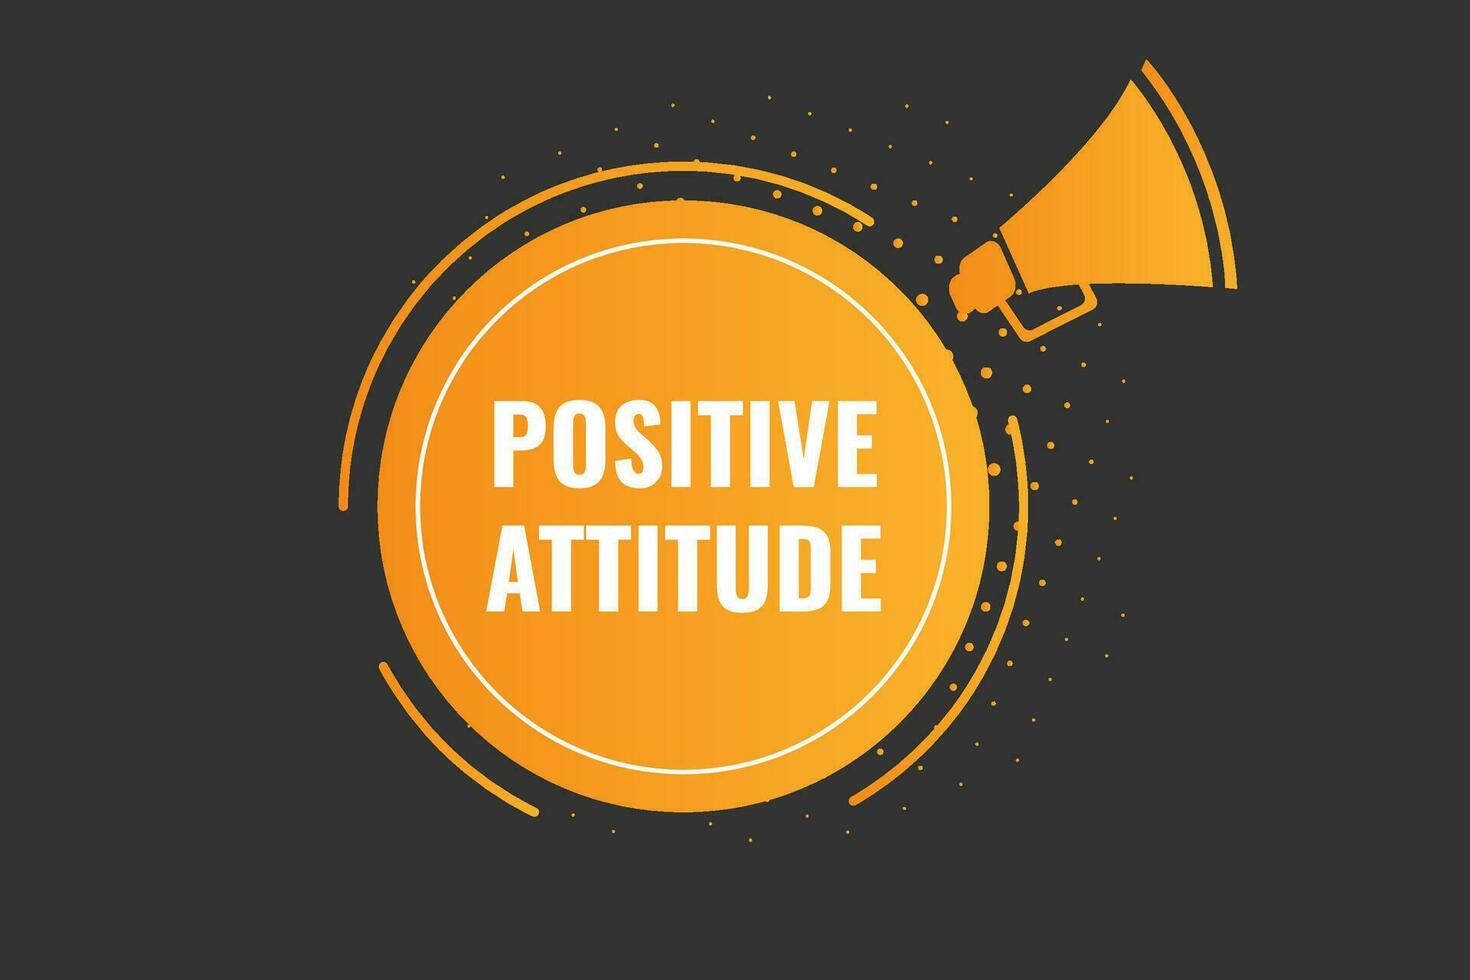 Positive Attitude Button. Speech Bubble, Banner Label Positive Attitude vector